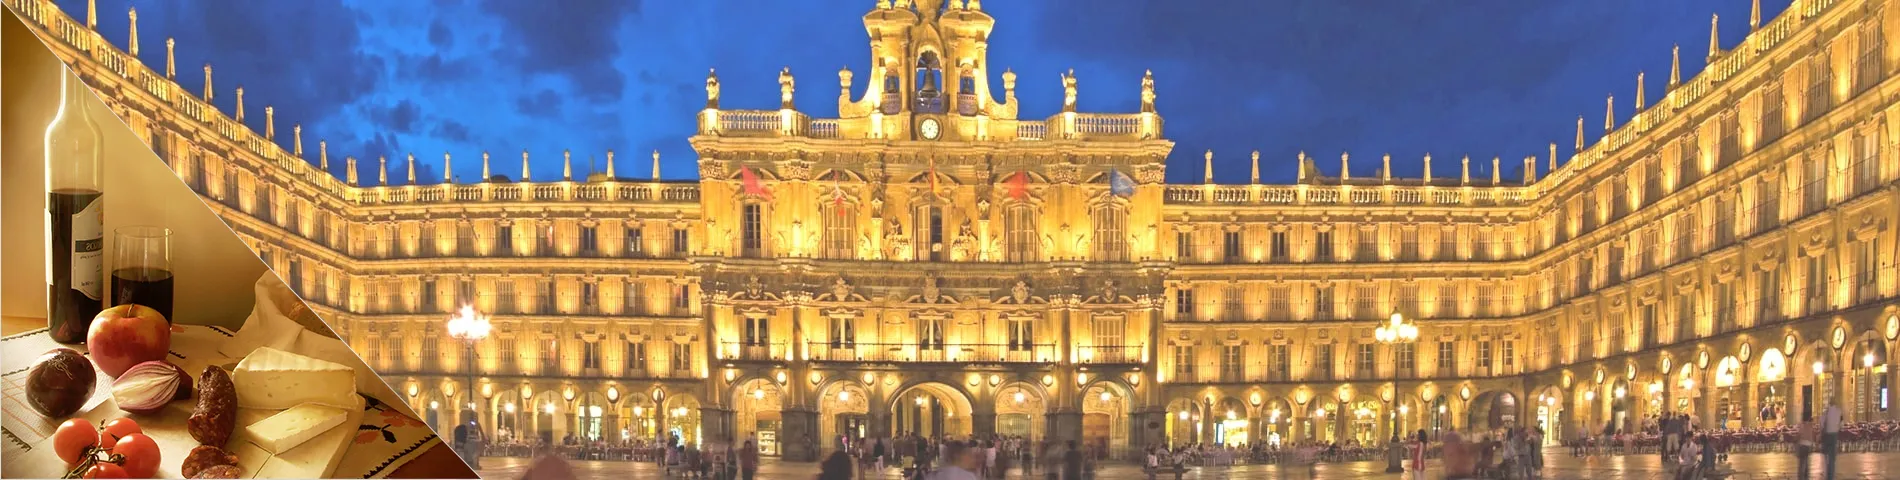 Salamanca - Spagnolo & Cultura